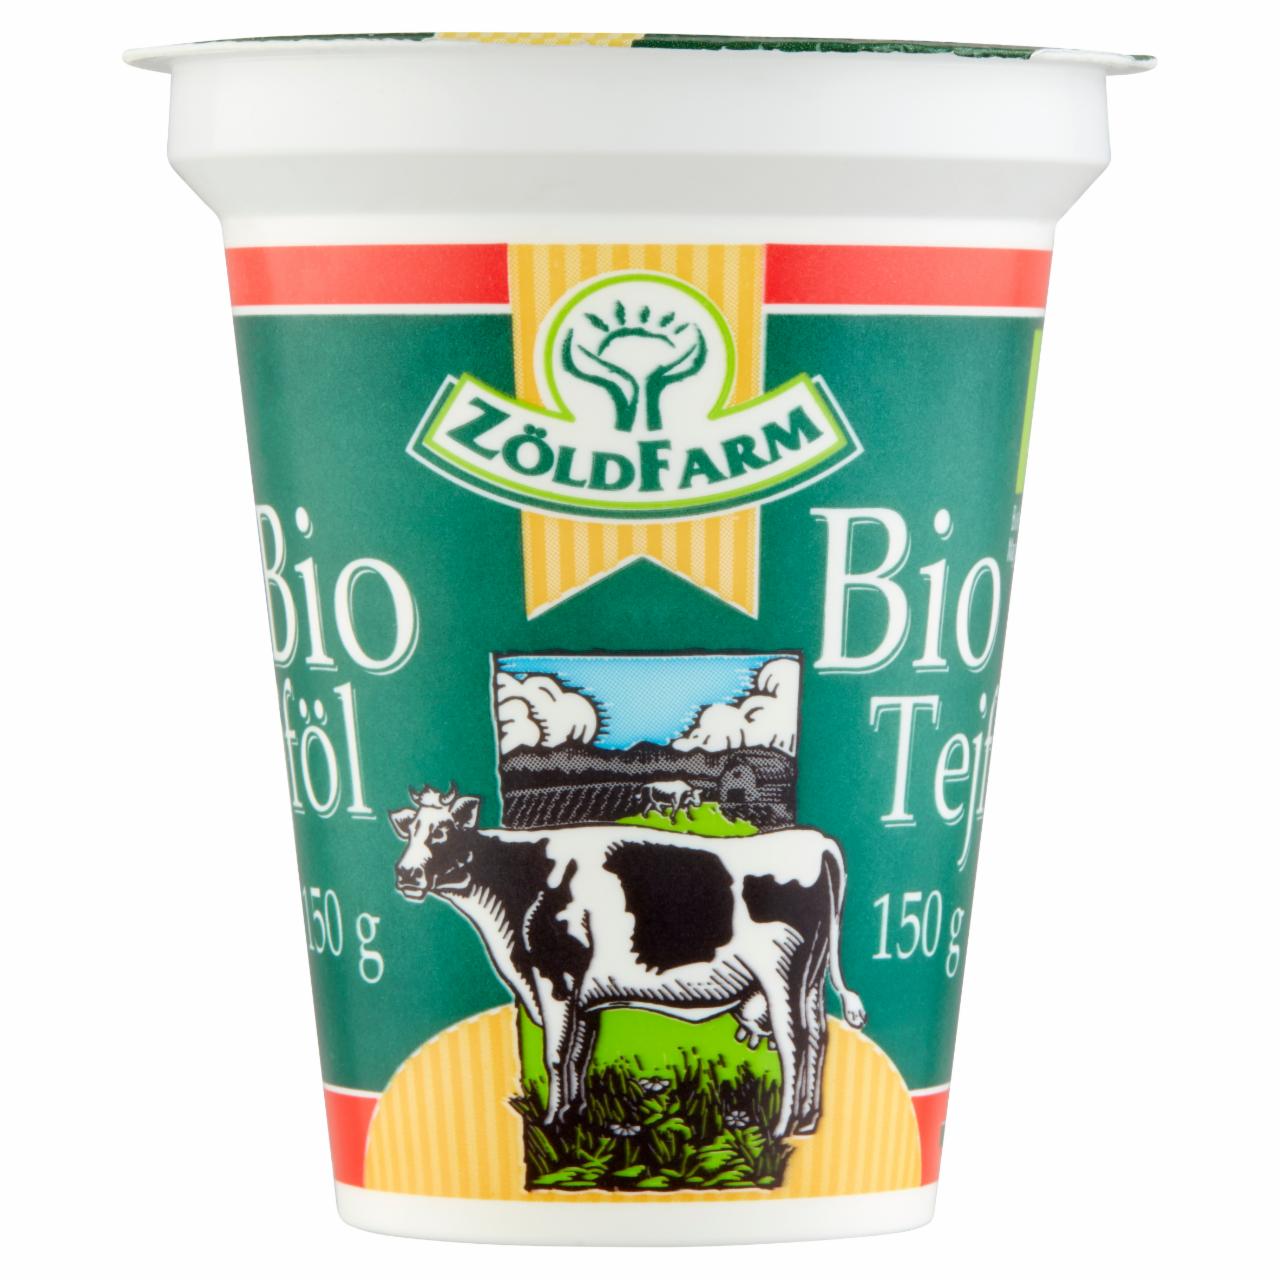 Képek - Zöldfarm BIO tejföl 20% 150 g